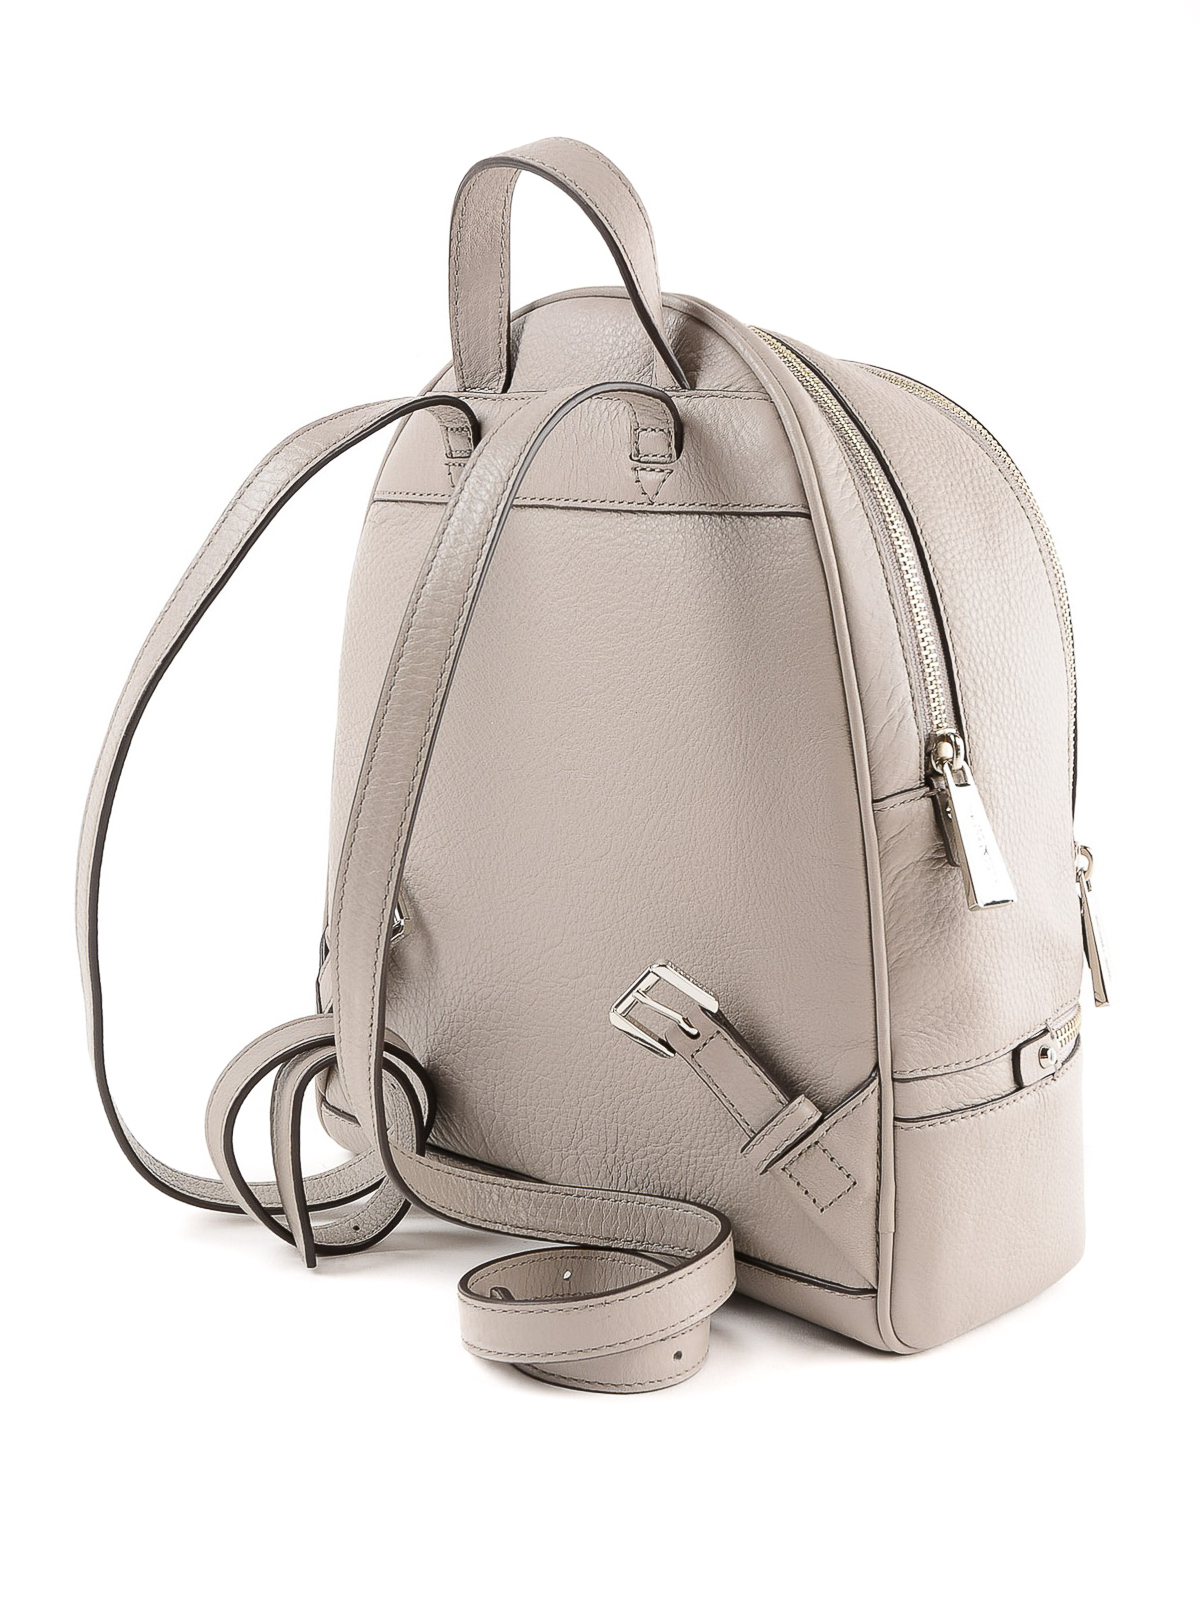 Backpacks Michael Kors - Rhea pearl grey leather backpack - 30S5SEZB1L081